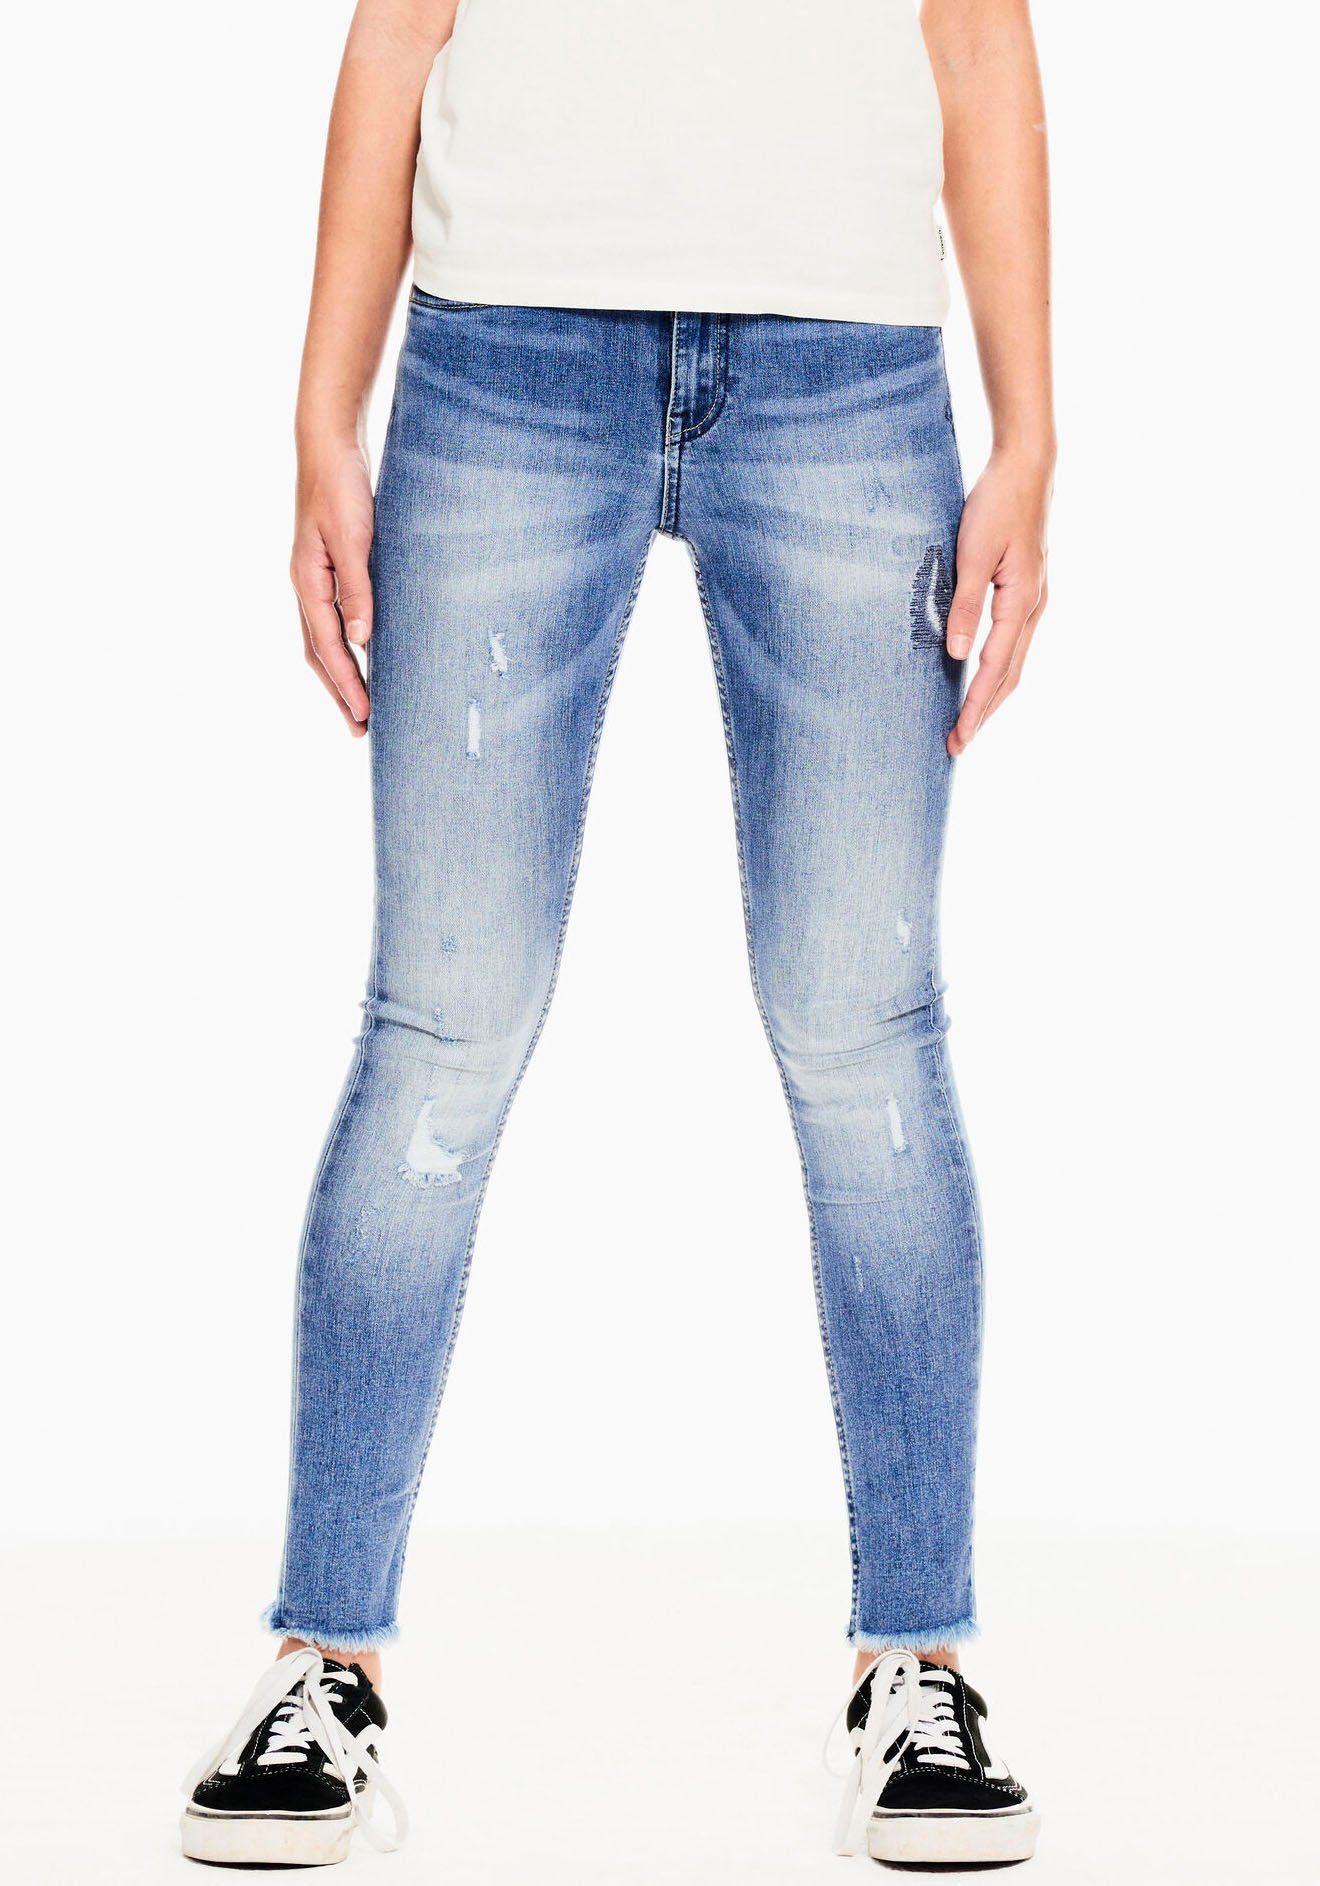 Garcia Stretch-Jeans Rianna 570 mit Taille schmale Passform Superslim, und Destroyed-Effekten, sehr hohe